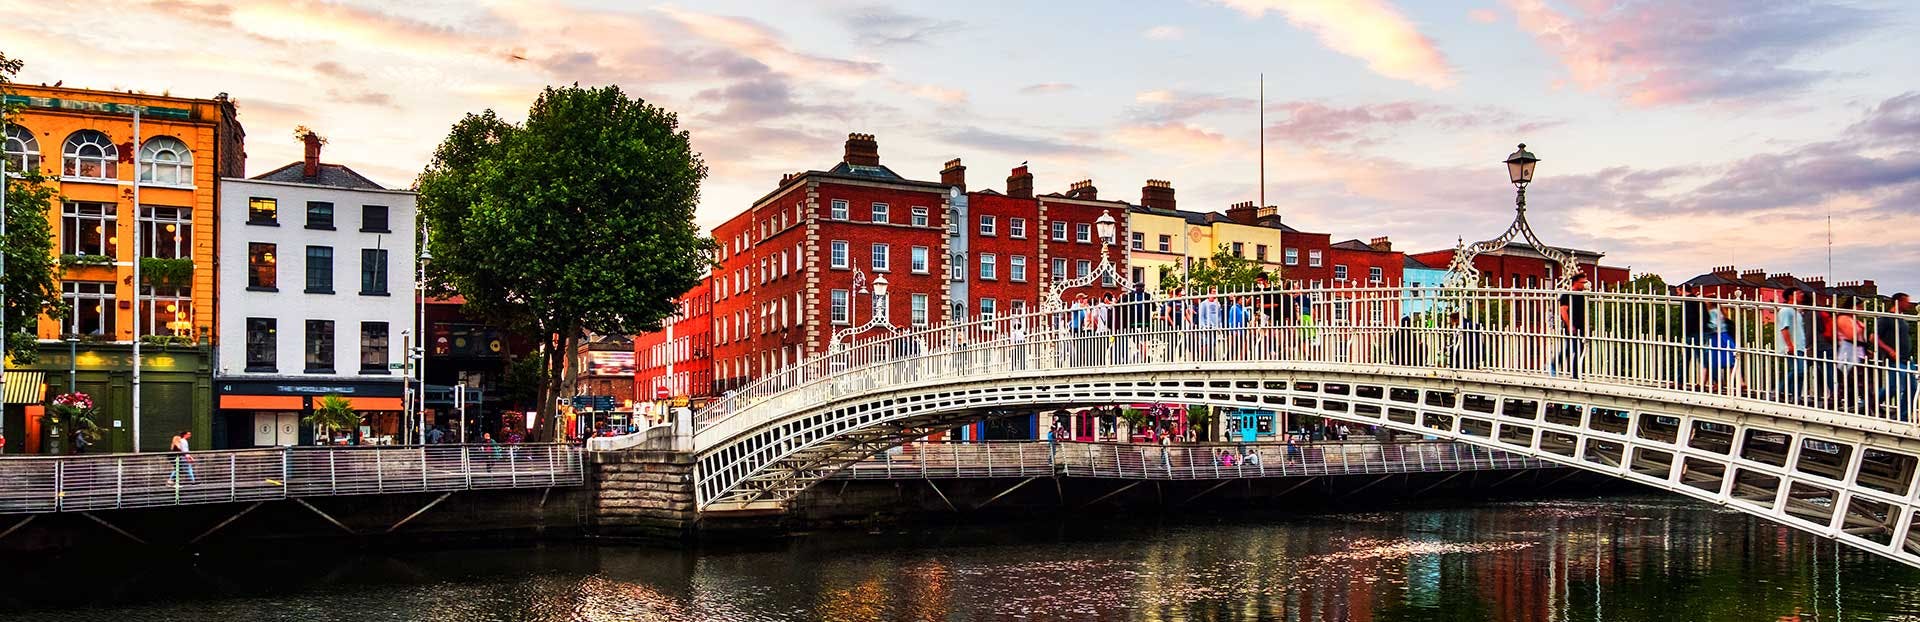 Ontdek de verhalen van Dublin tijdens een zelfgeleide audiotour